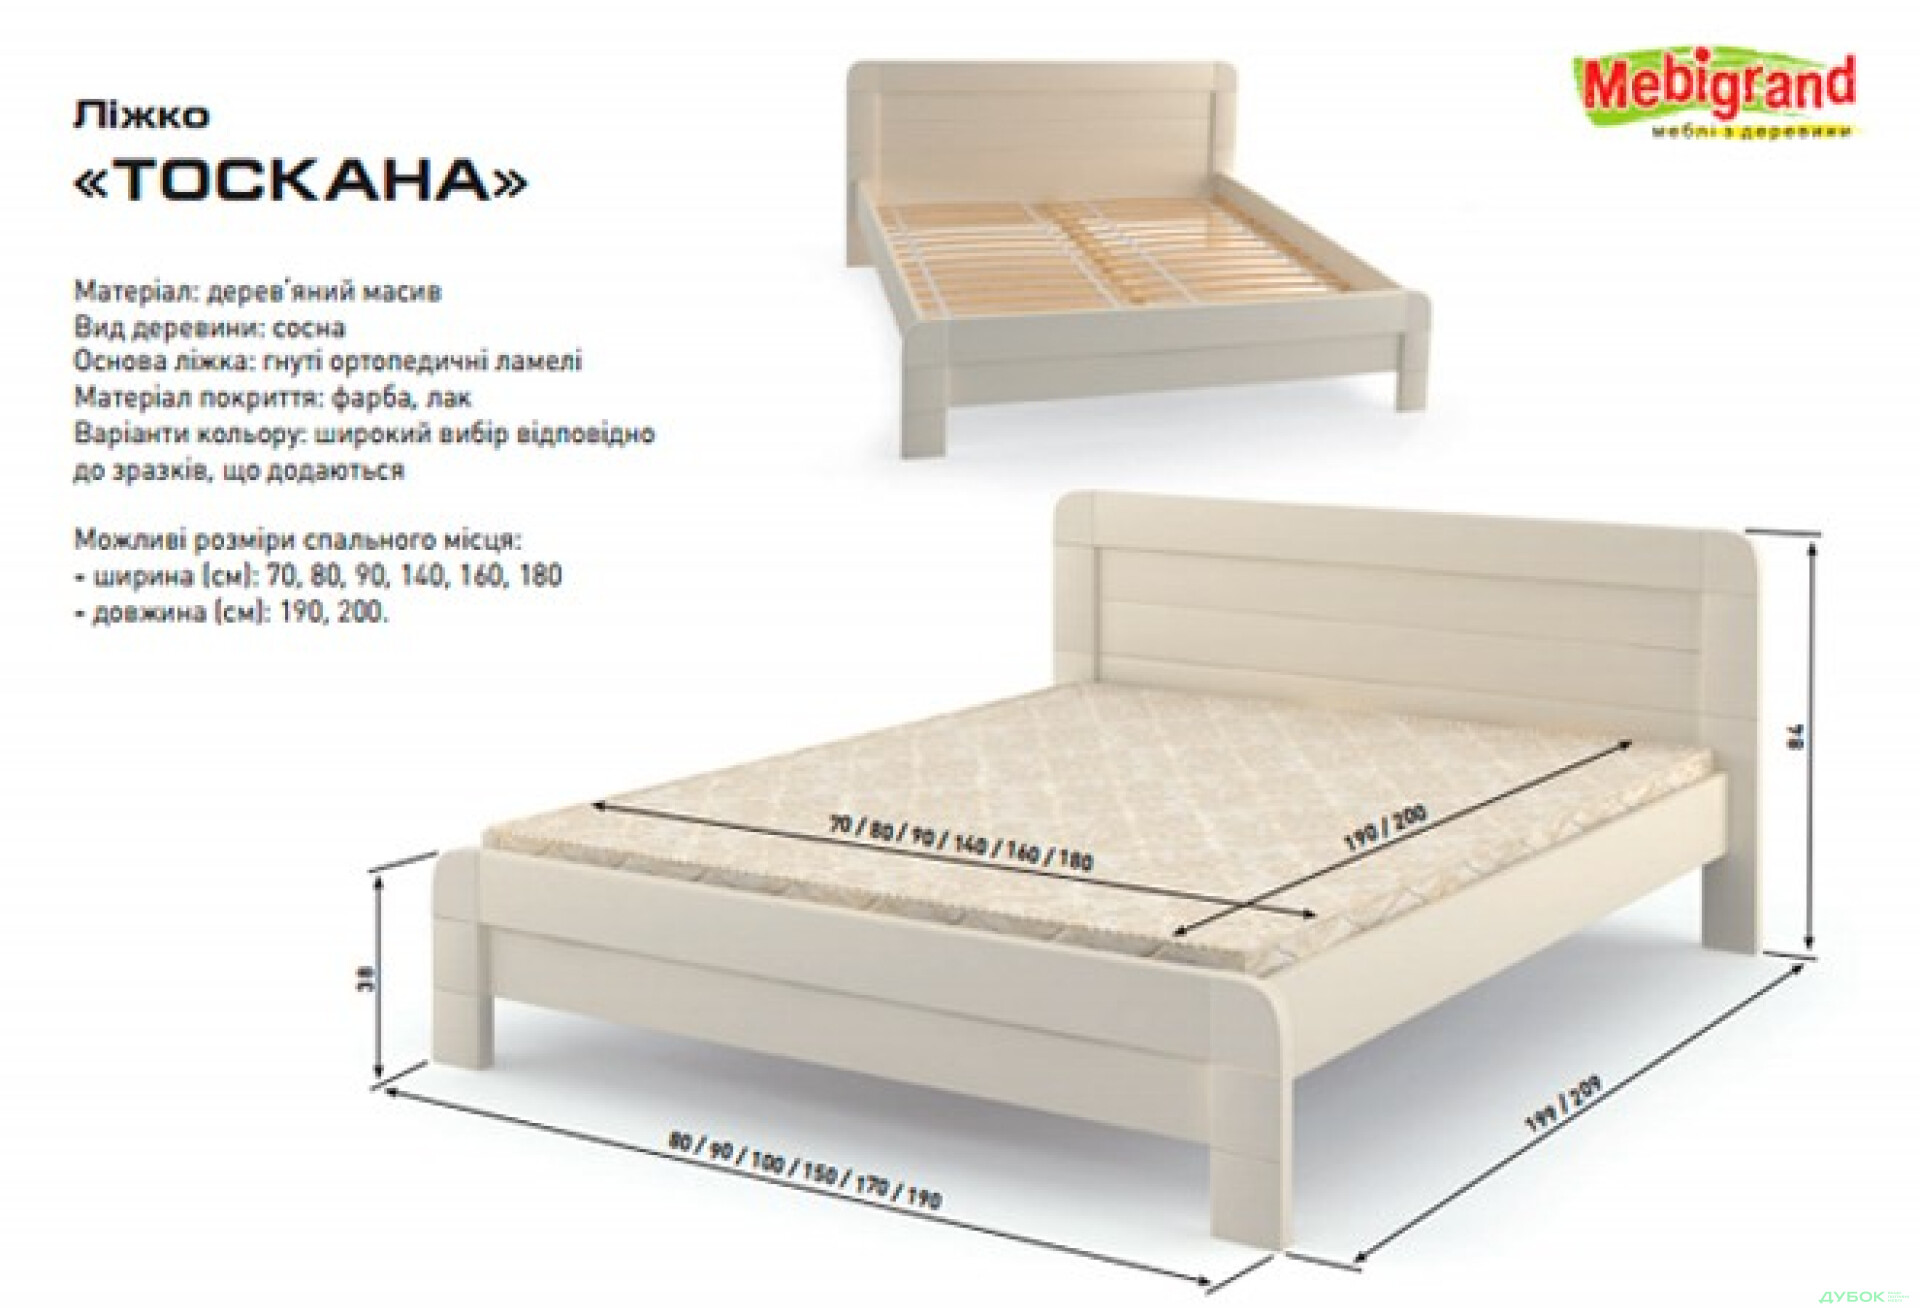 Фото 2 - Кровать двуспальная деревяная Тоскана 160 Mebigrand